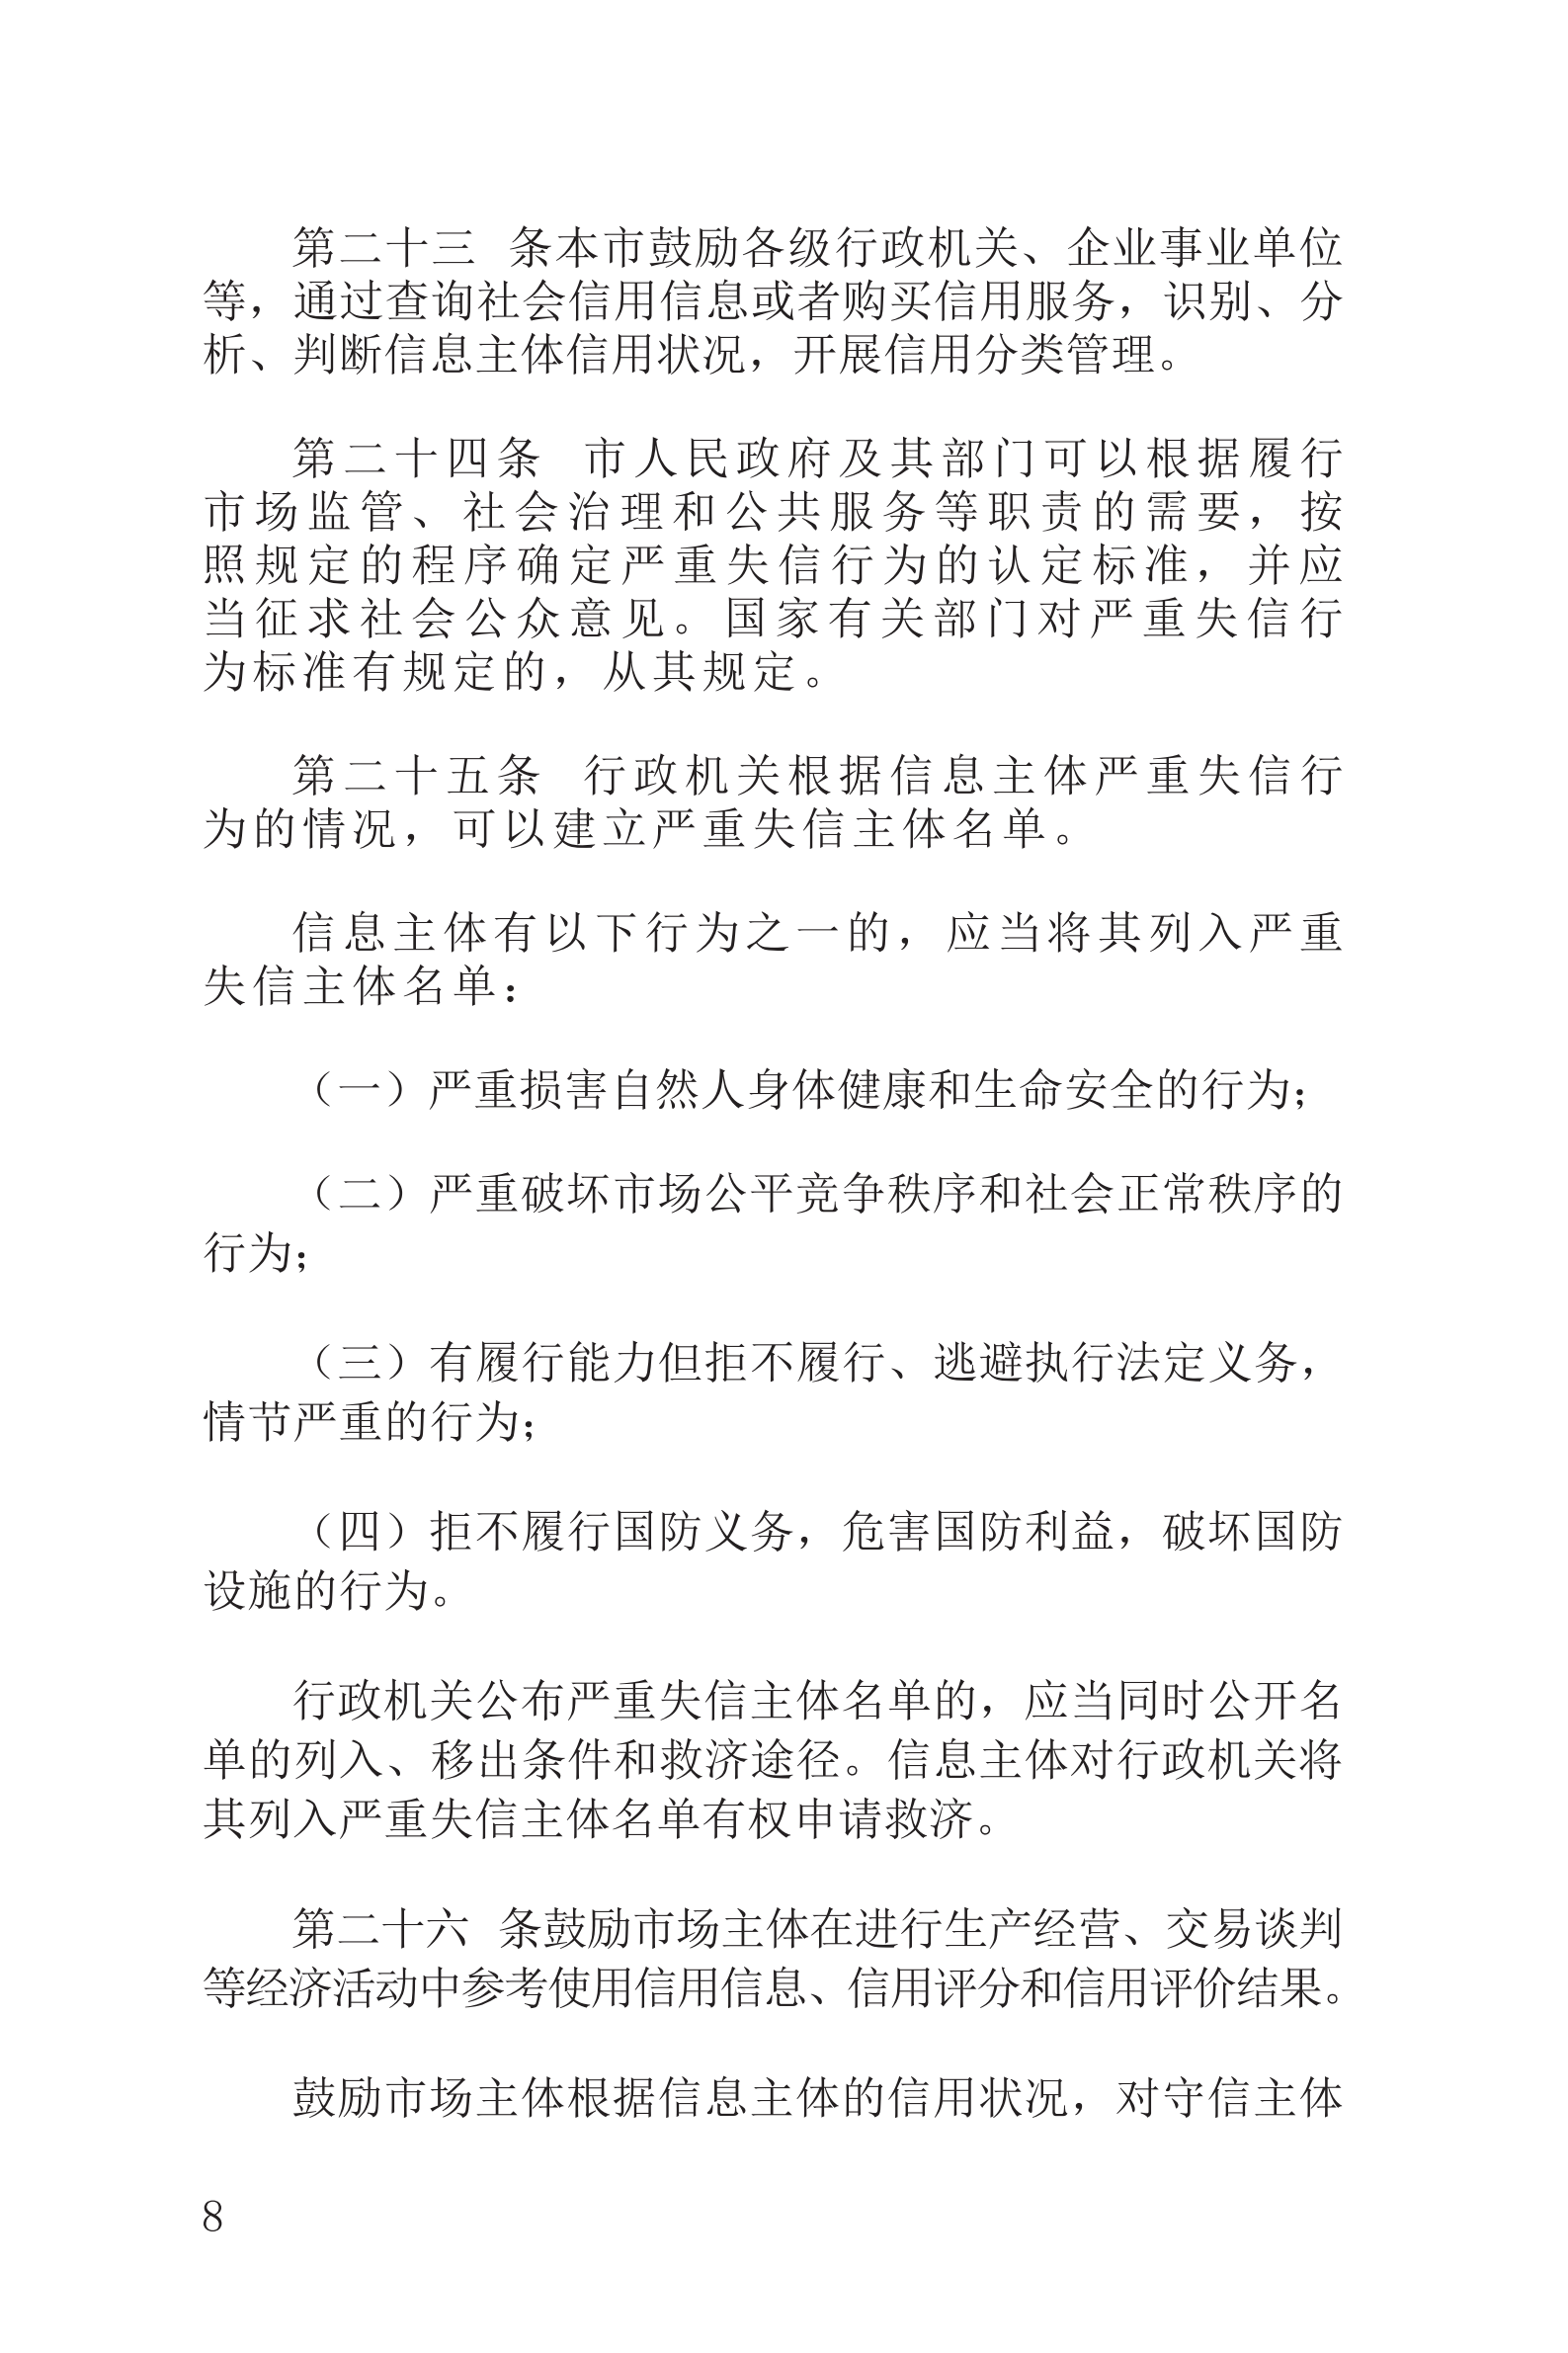 上海市社会信用条例_09.png